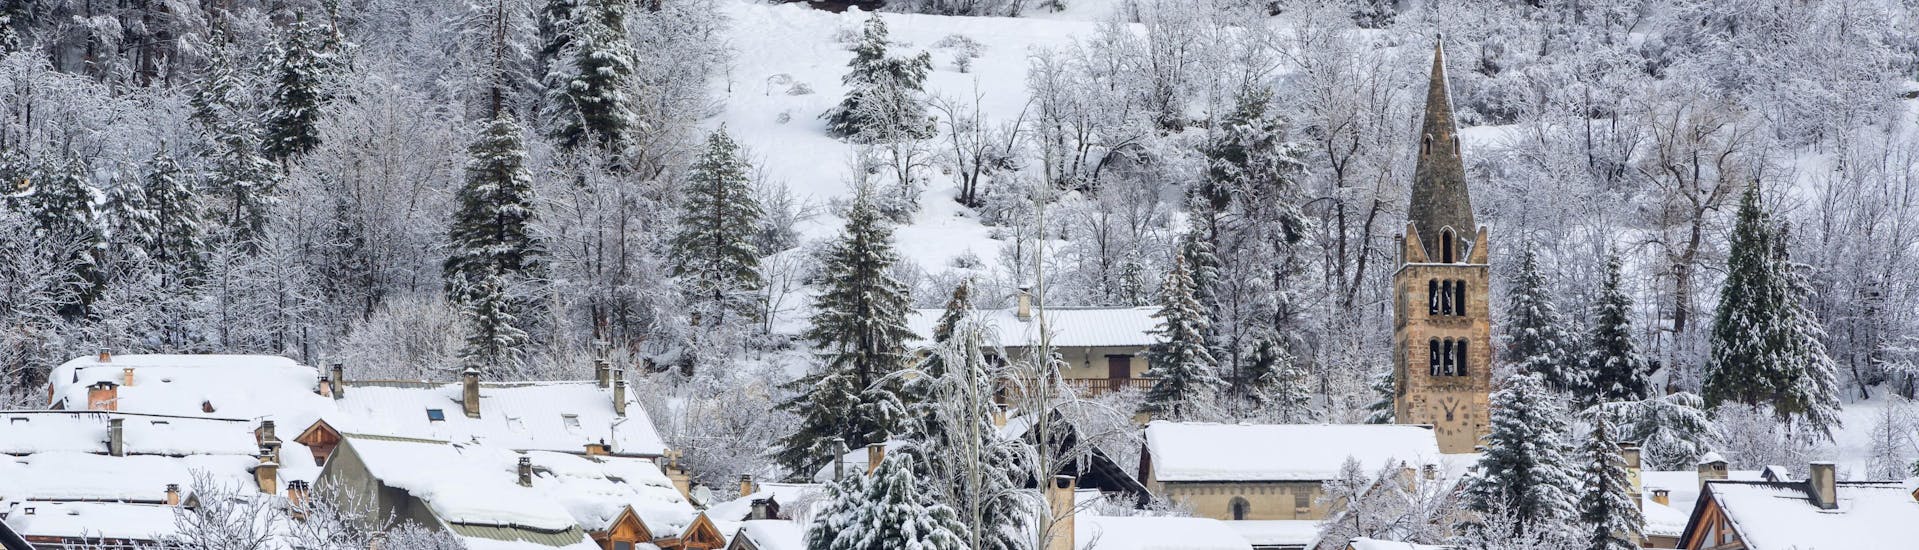 Petit village de Serre-Chevalier Villeneuve recouvert de neige.